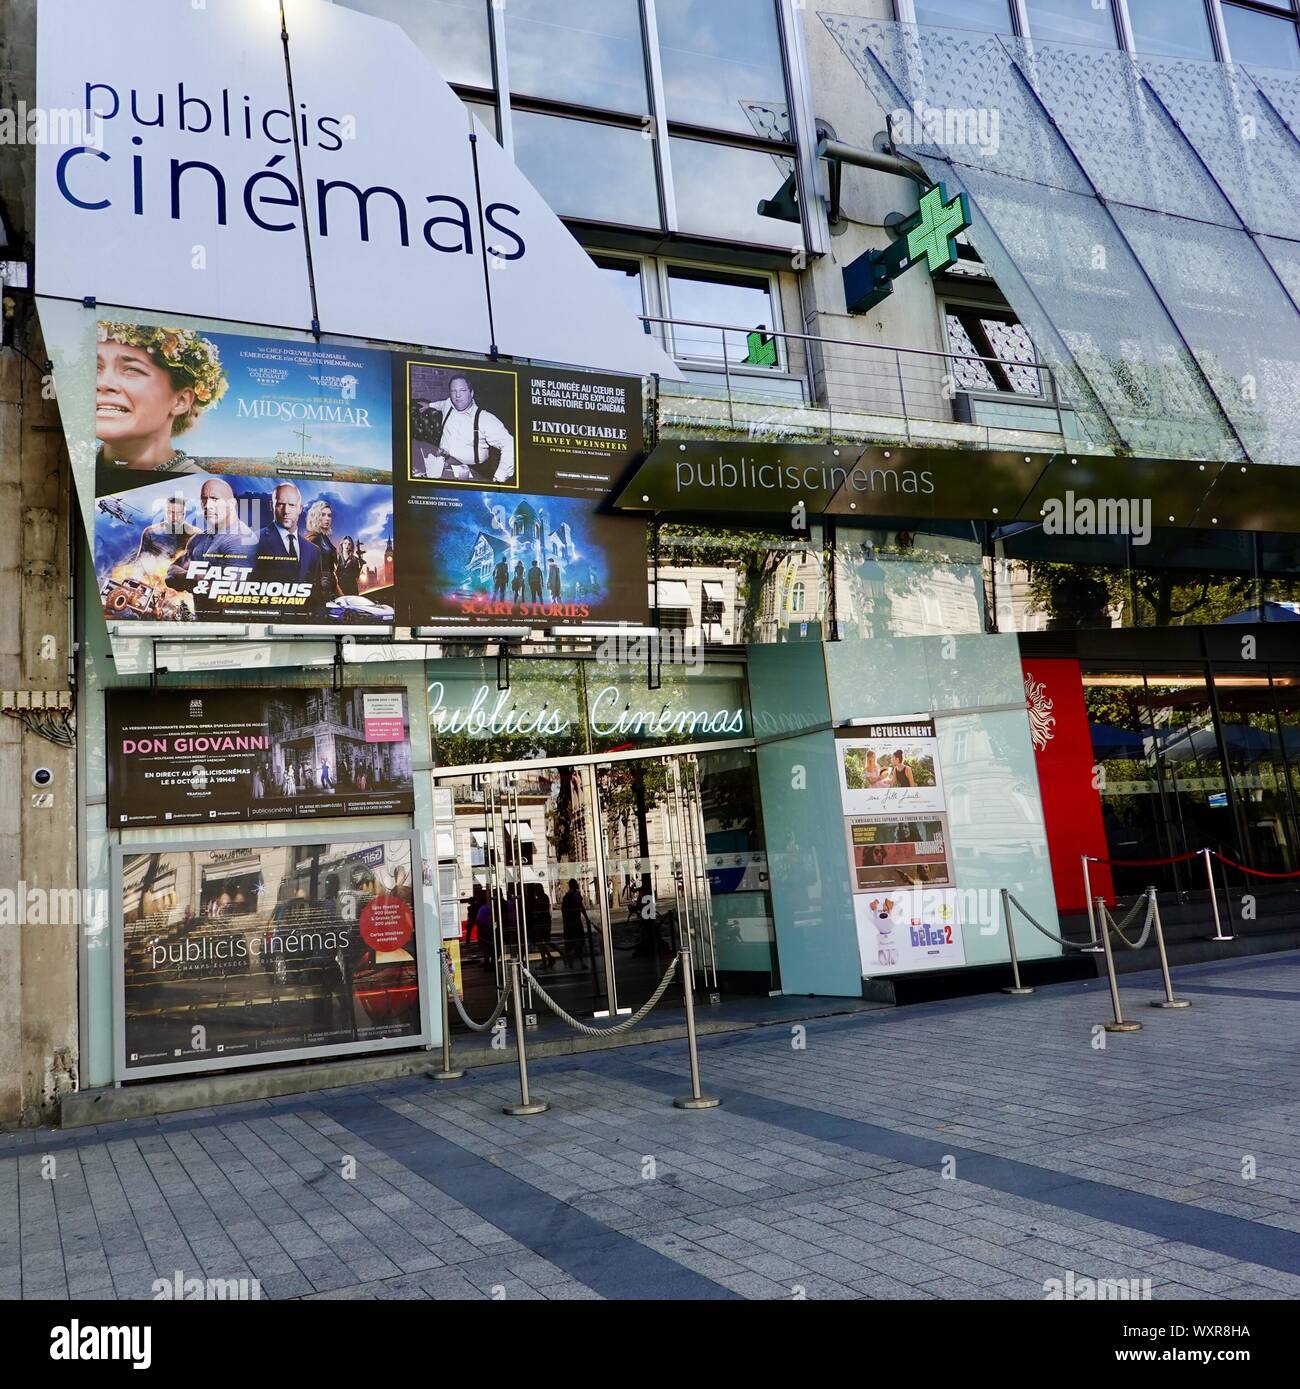 Cinema Publicis, French cinema, front facade of the theatre on Avenue Champs-Élysées, Paris, France. Stock Photo